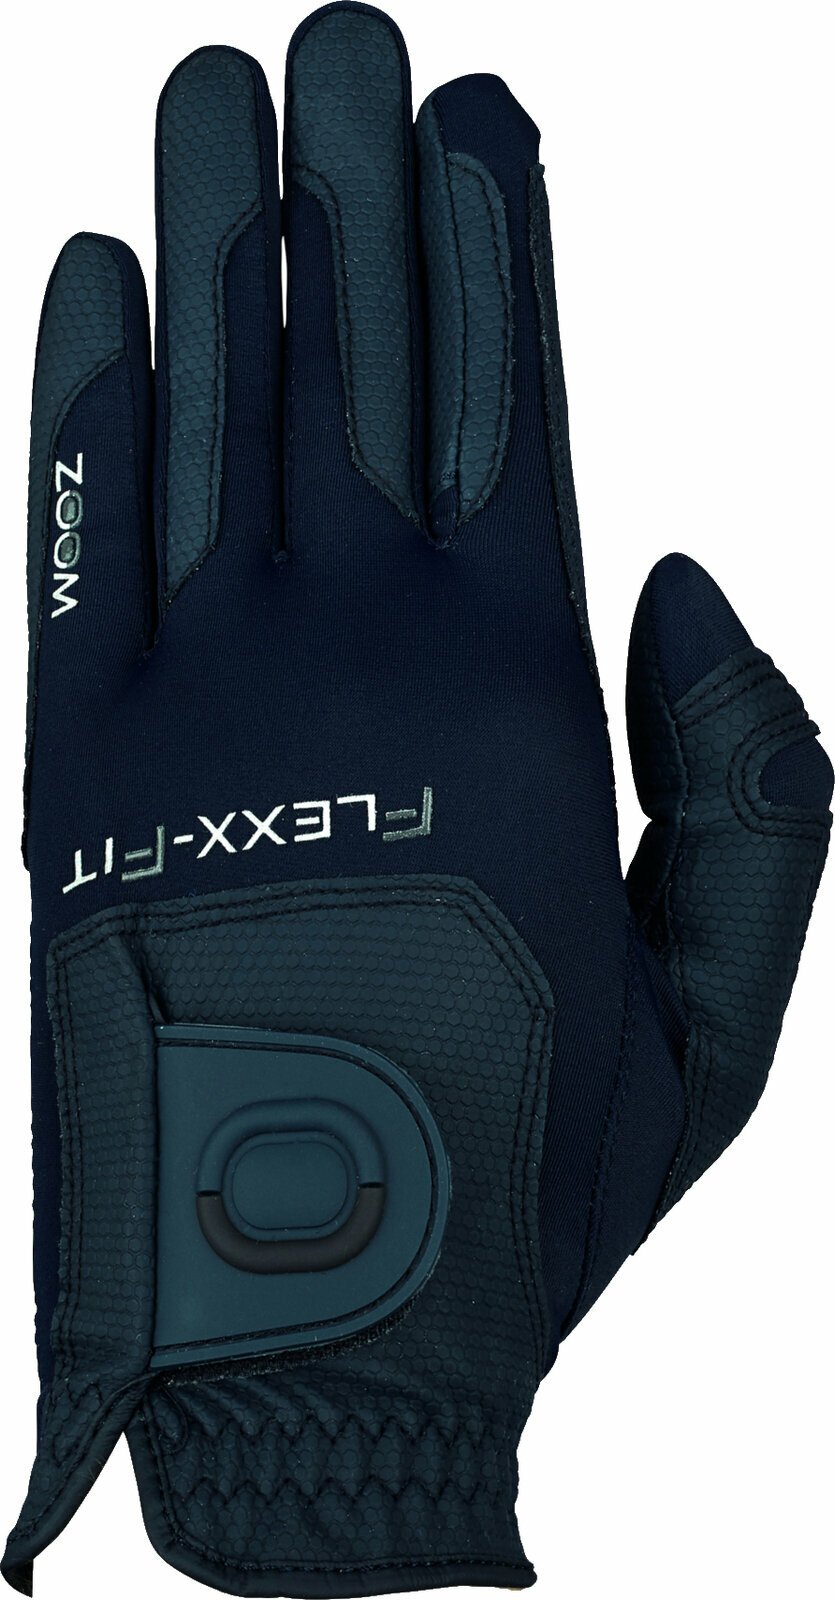 Handschuhe Zoom Gloves Weather Style Junior Golf Glove Navy LH